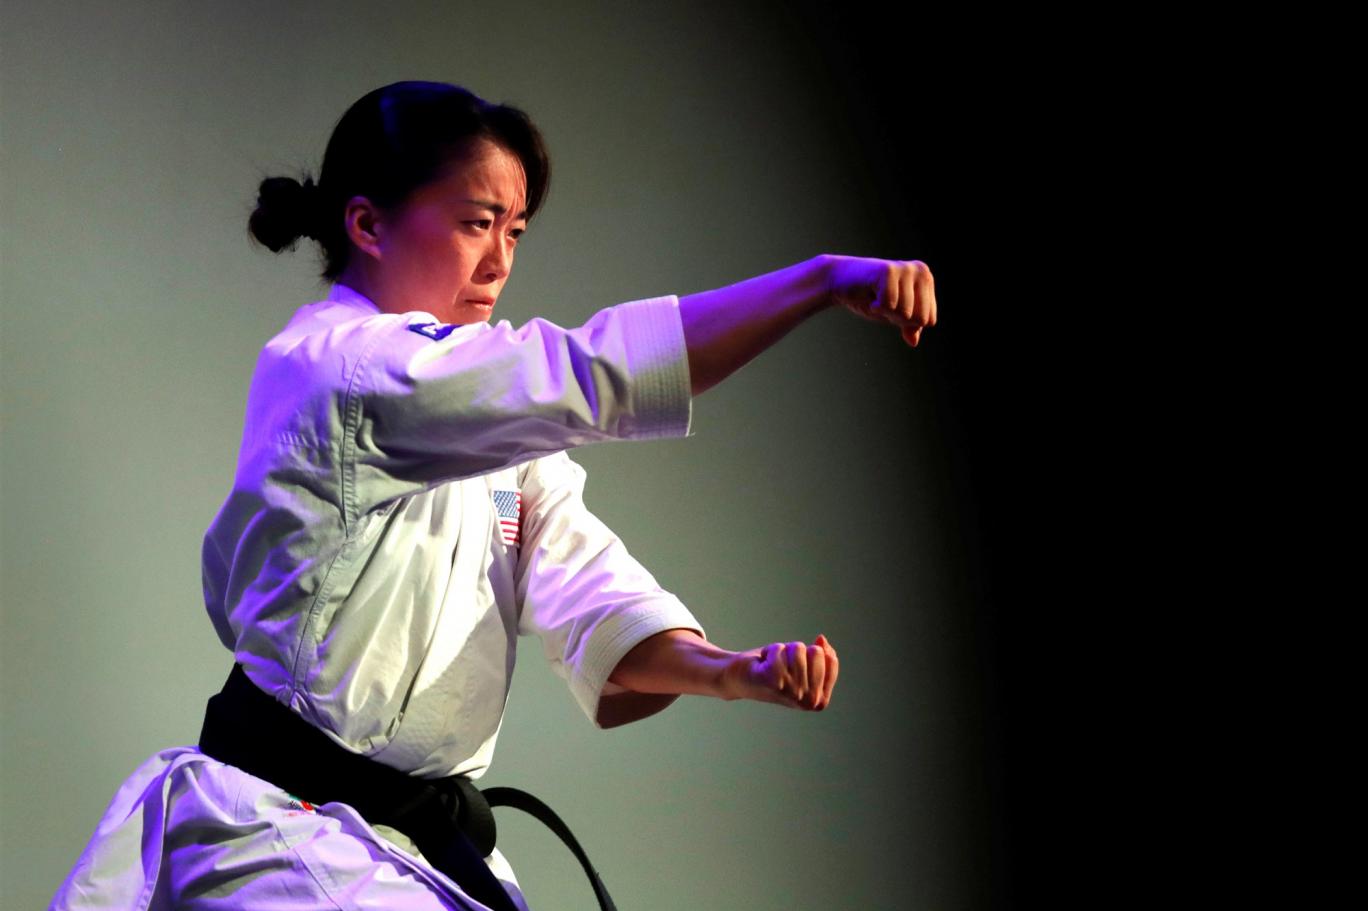 Japon kökenli Amerikalı kadın karateci, saldırıyı son aylarda ABD'ye musallat olan Asyalı karşıtı nefret söylemi ve şiddetin bir örneği olarak görüyor. KTLA'ya konuşan Kokumai 